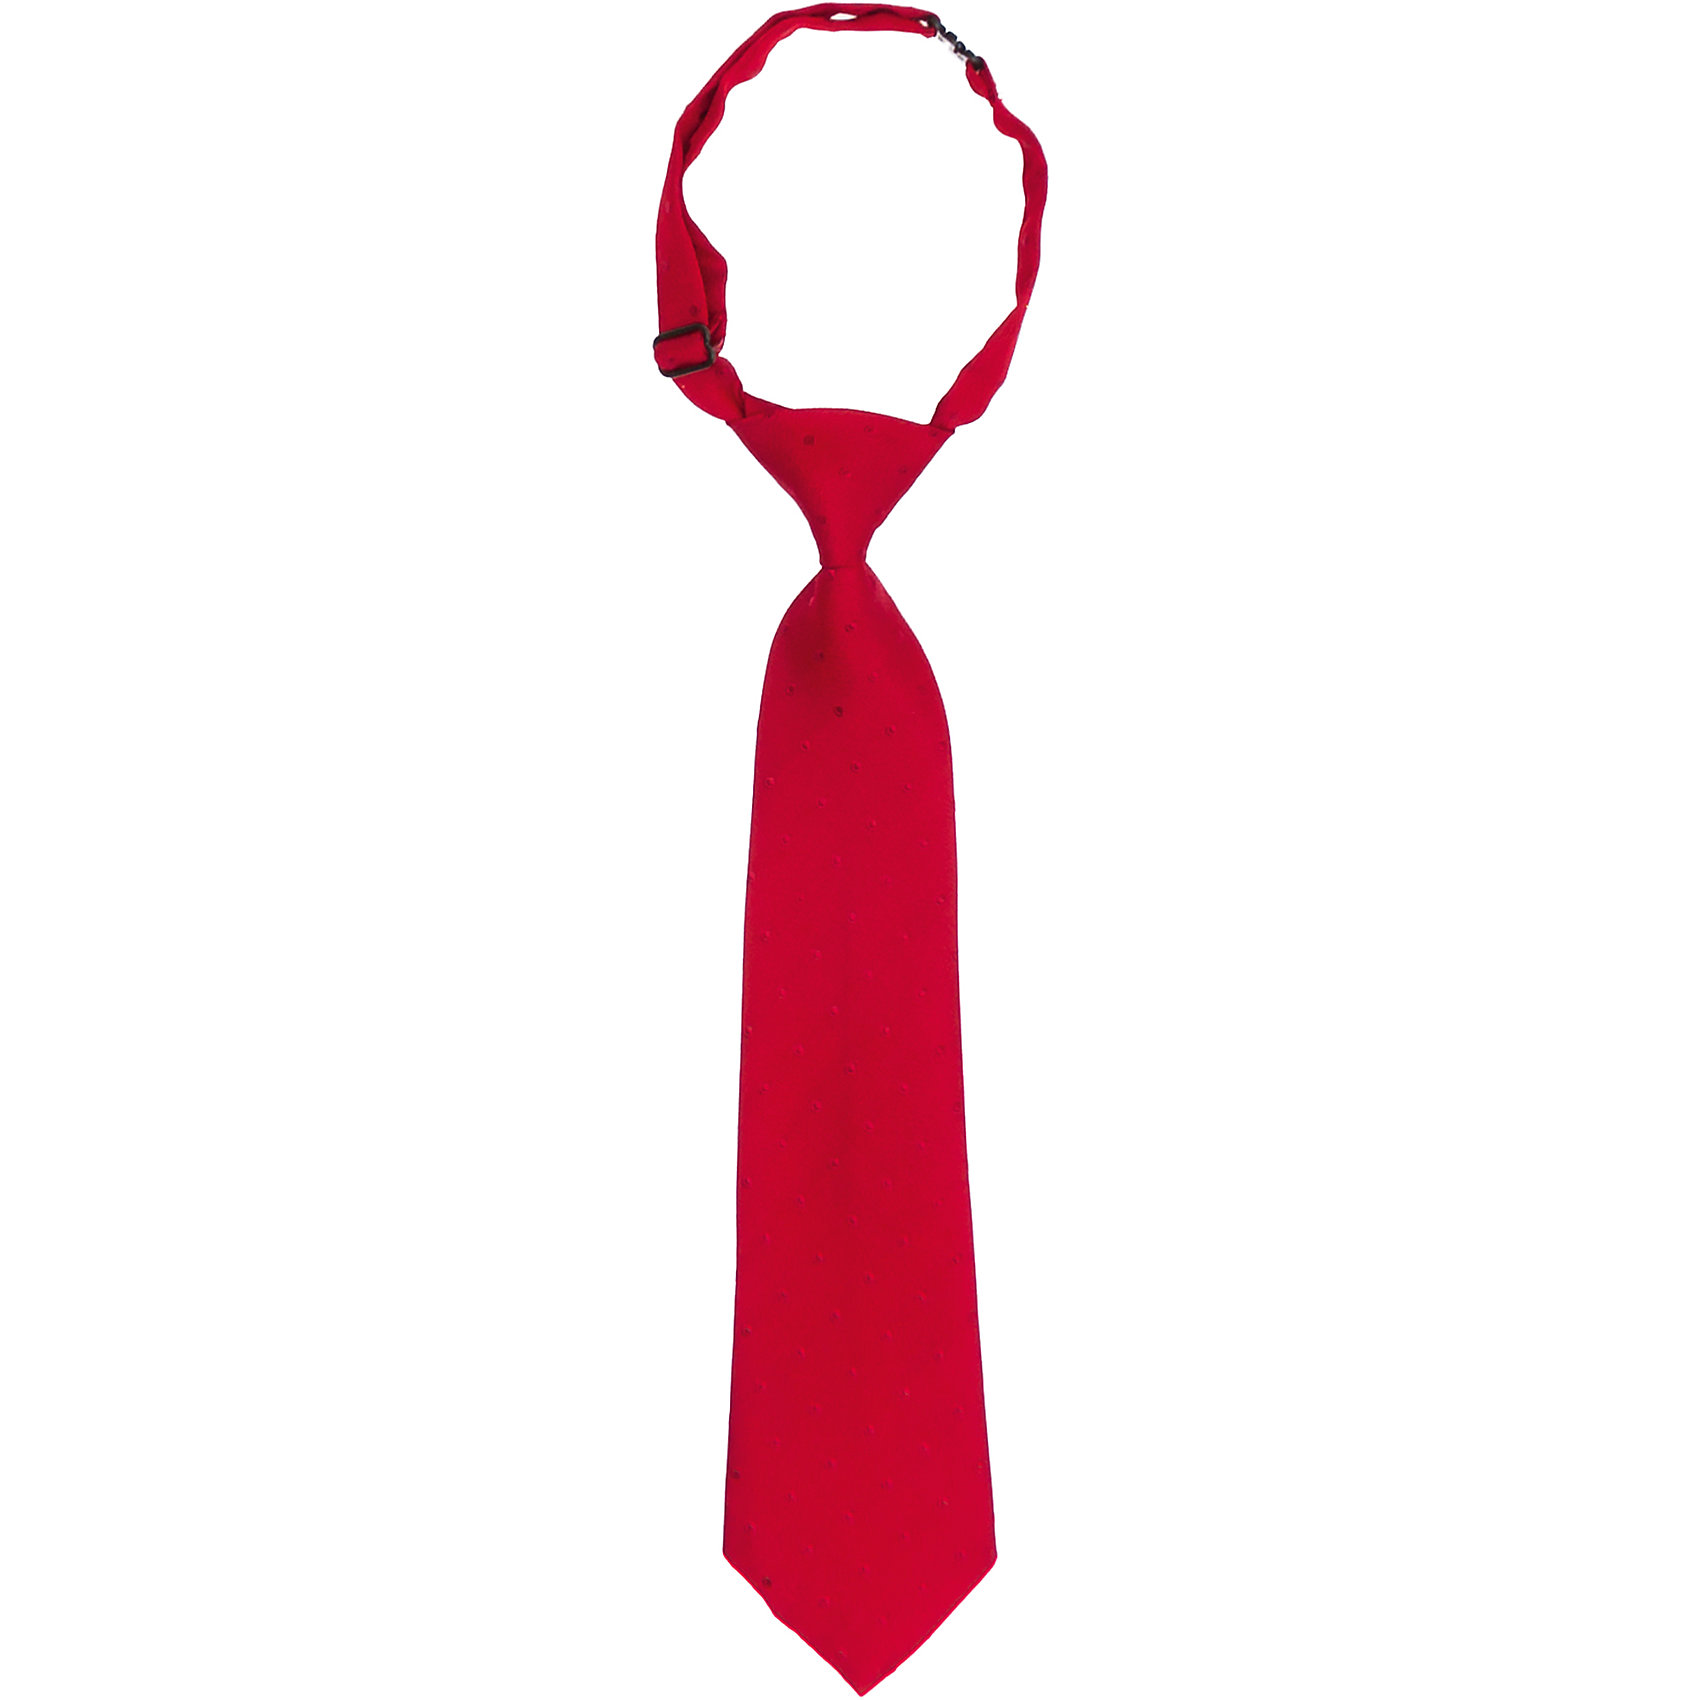 Галстук для богомола. Галстуки. Дети в красных галстуках. Красный галстук. Галстук для детей.